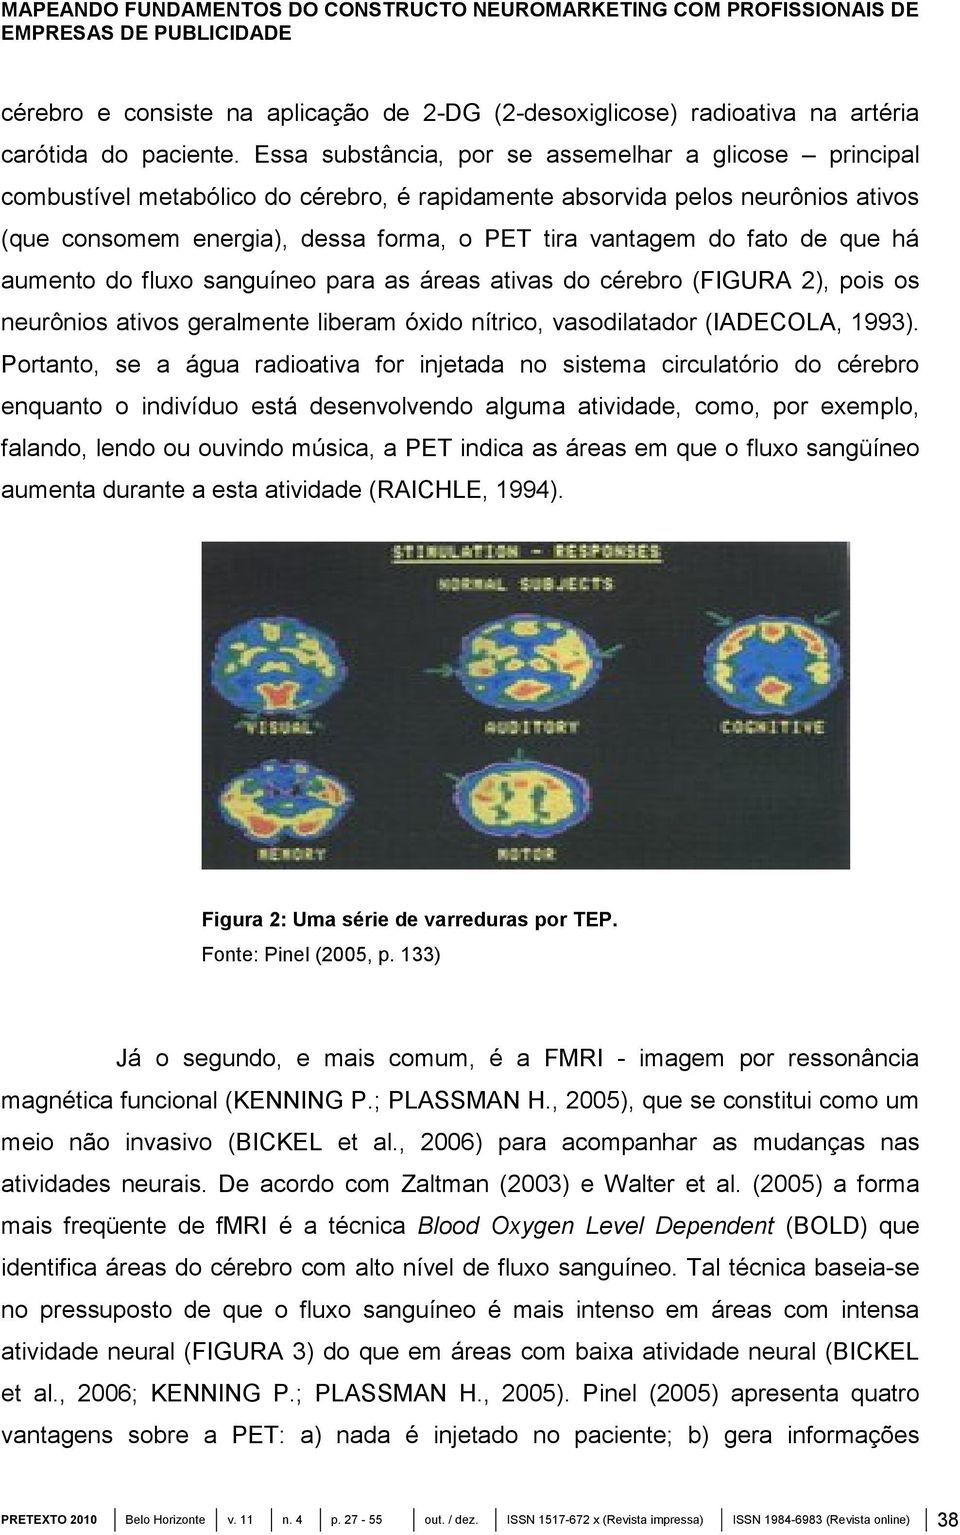 fato de que há aumento do fluxo sanguíneo para as áreas ativas do cérebro (FIGURA 2), pois os neurônios ativos geralmente liberam óxido nítrico, vasodilatador (IADECOLA, 1993).